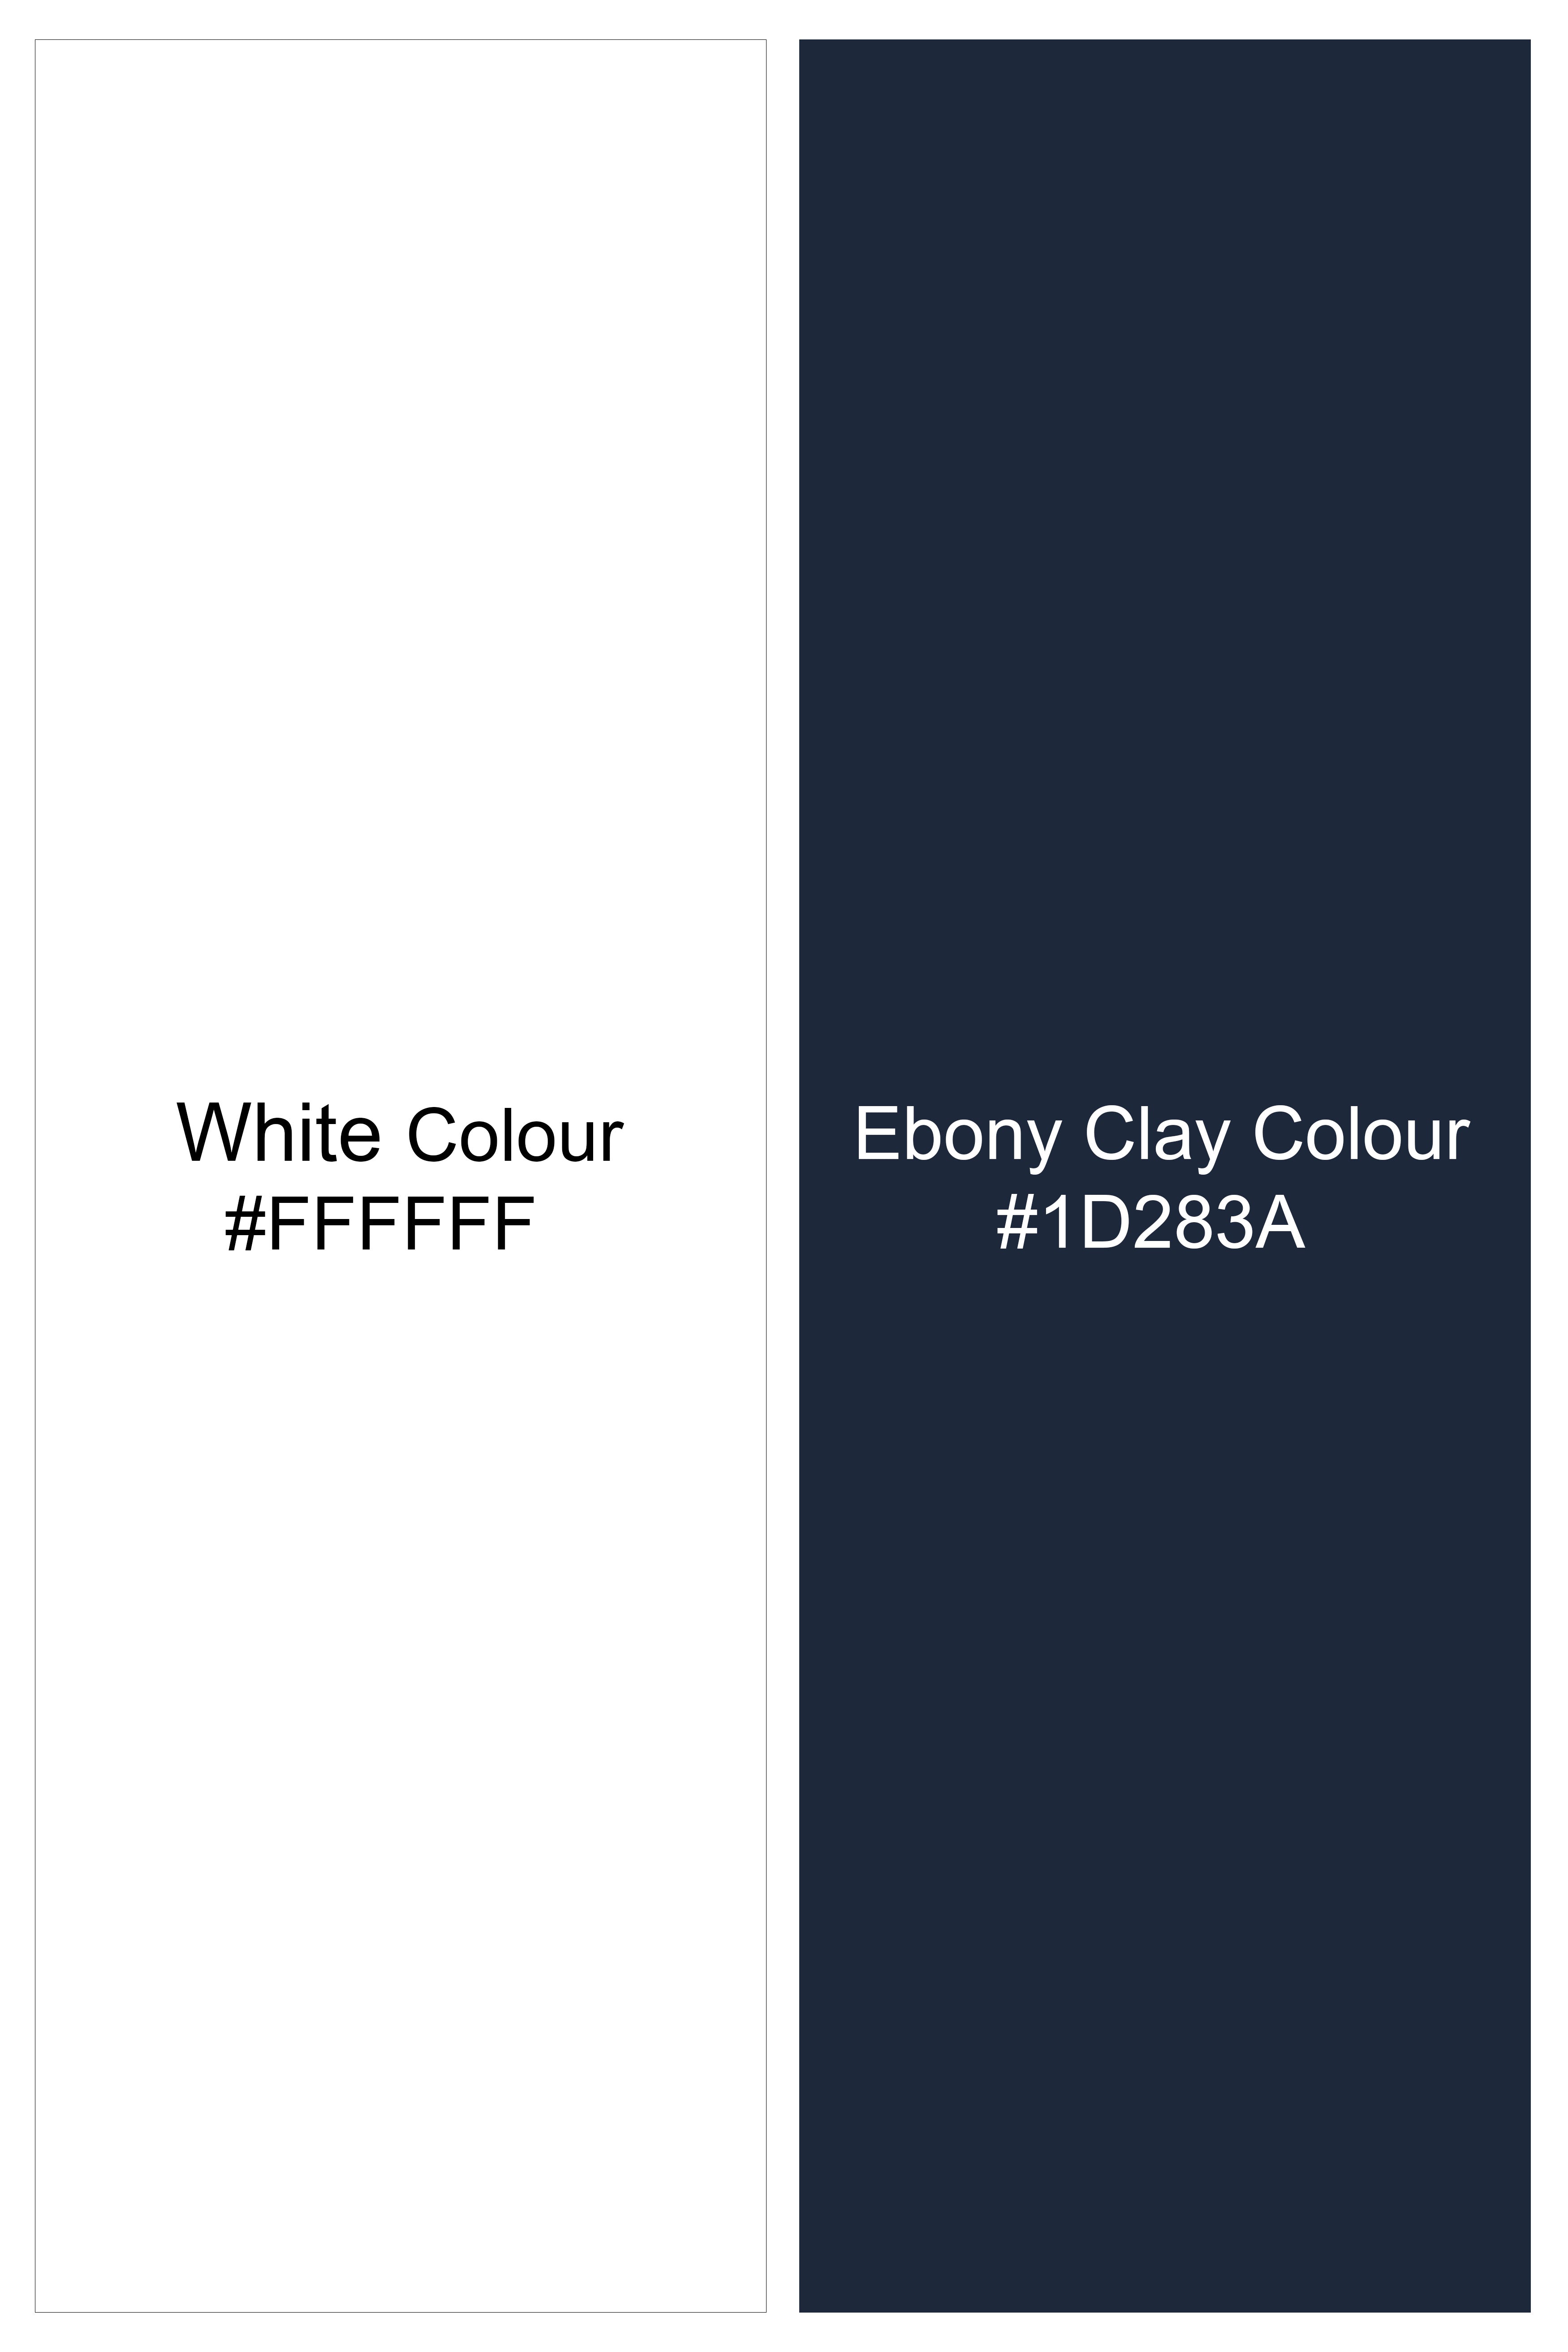 Bright White and Midnight Blue Dobby Textured Premium Giza Cotton Designer Shirt 11396-P205-38, 11396-P205-H-38, 11396-P205-39, 11396-P205-H-39, 11396-P205-40, 11396-P205-H-40, 11396-P205-42, 11396-P205-H-42, 11396-P205-44, 11396-P205-H-44, 11396-P205-46, 11396-P205-H-46, 11396-P205-48, 11396-P205-H-48, 11396-P205-50, 11396-P205-H-50, 11396-P205-52, 11396-P205-H-52